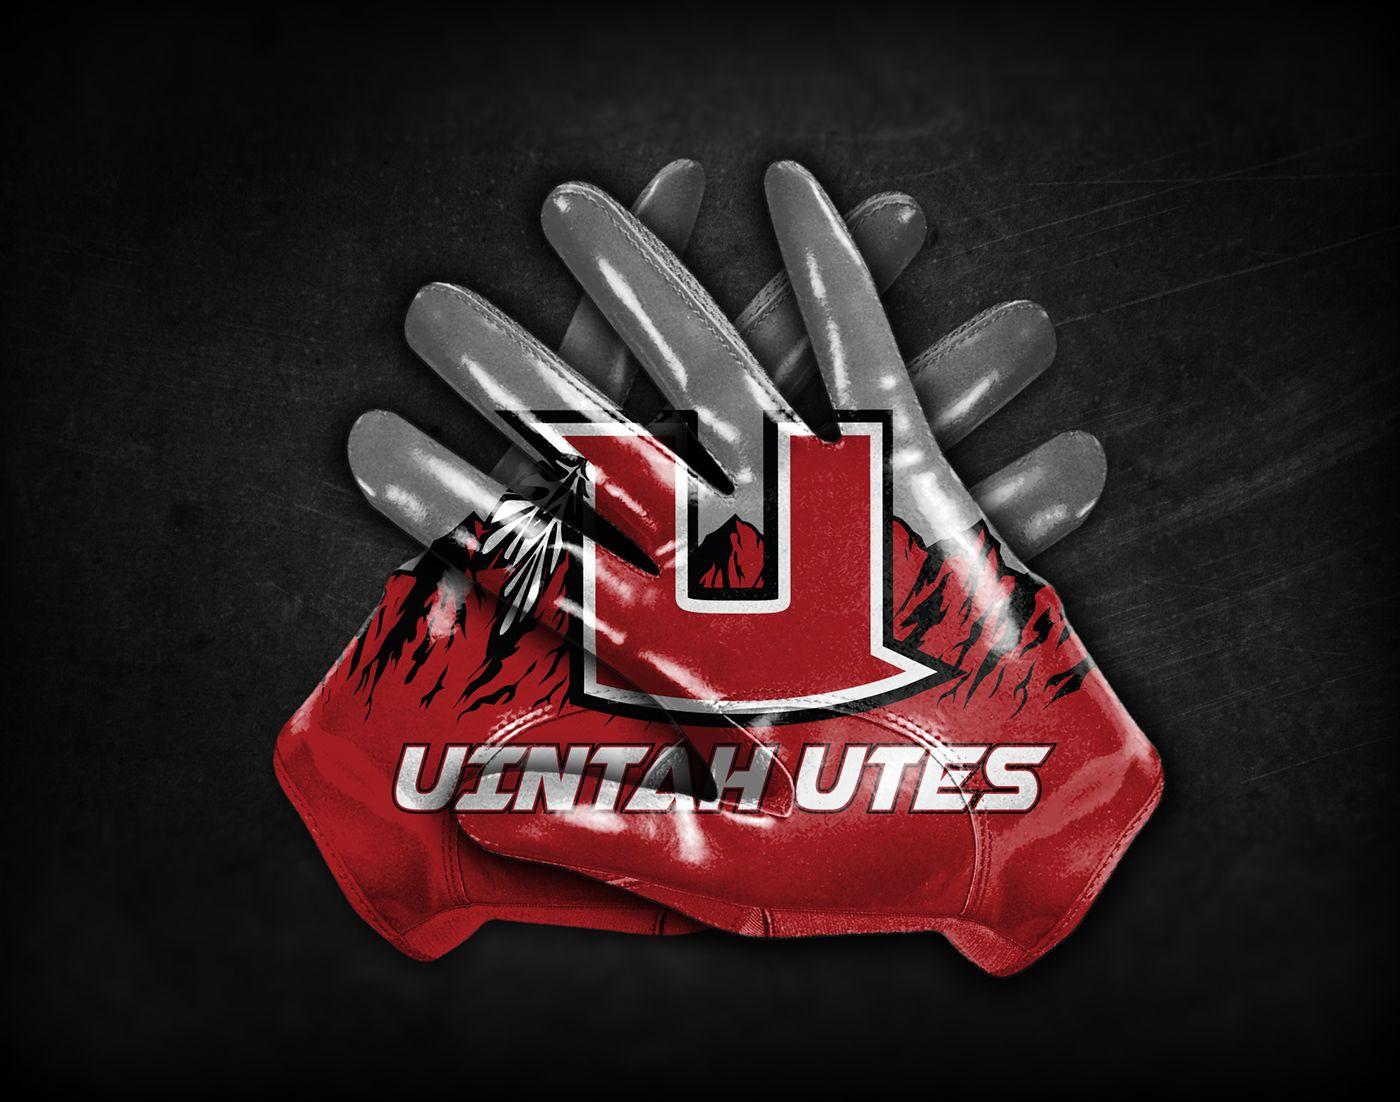 Uintah Utes Logo - Uintah Utes Football Team Rebranding For Eastbay on Behance